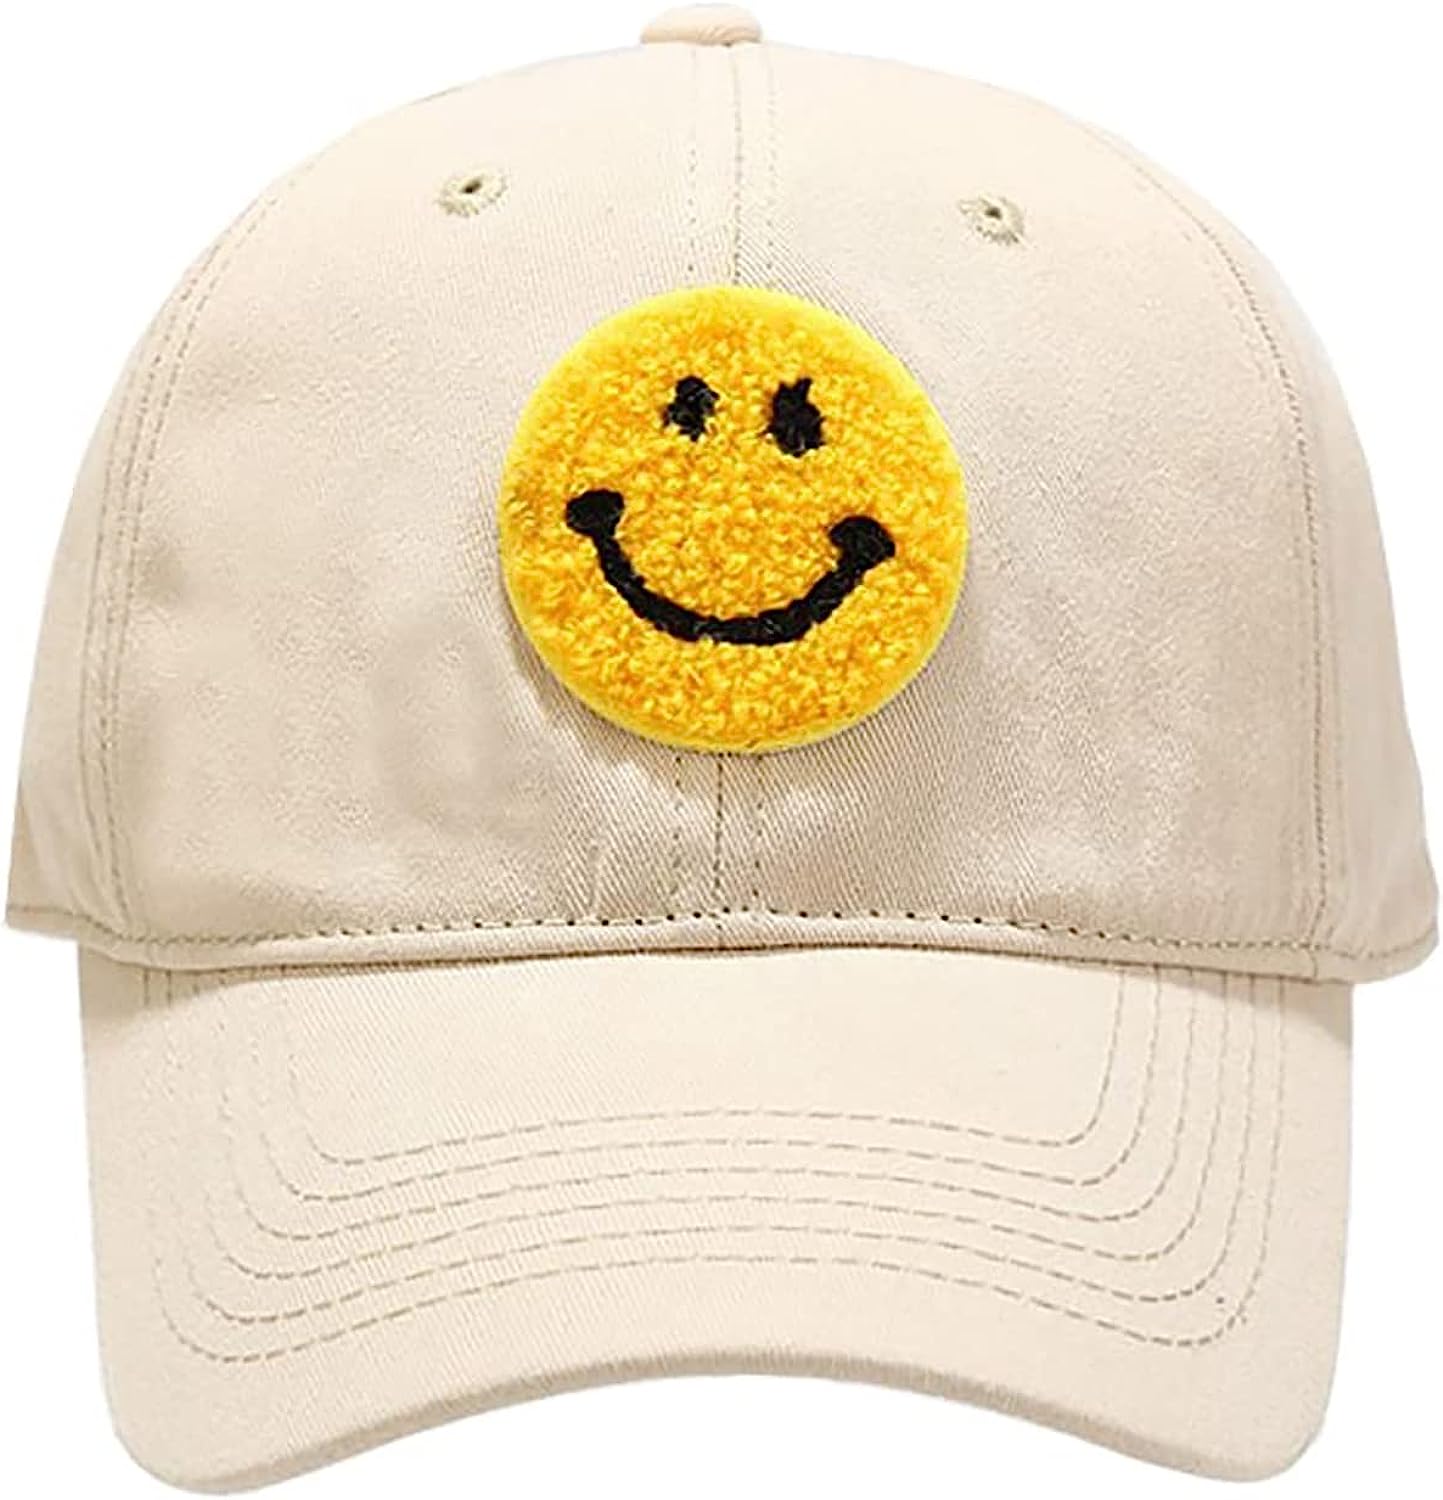 Smiley Face Trucker Hat Summer Adjustable Mesh Baseball Cap